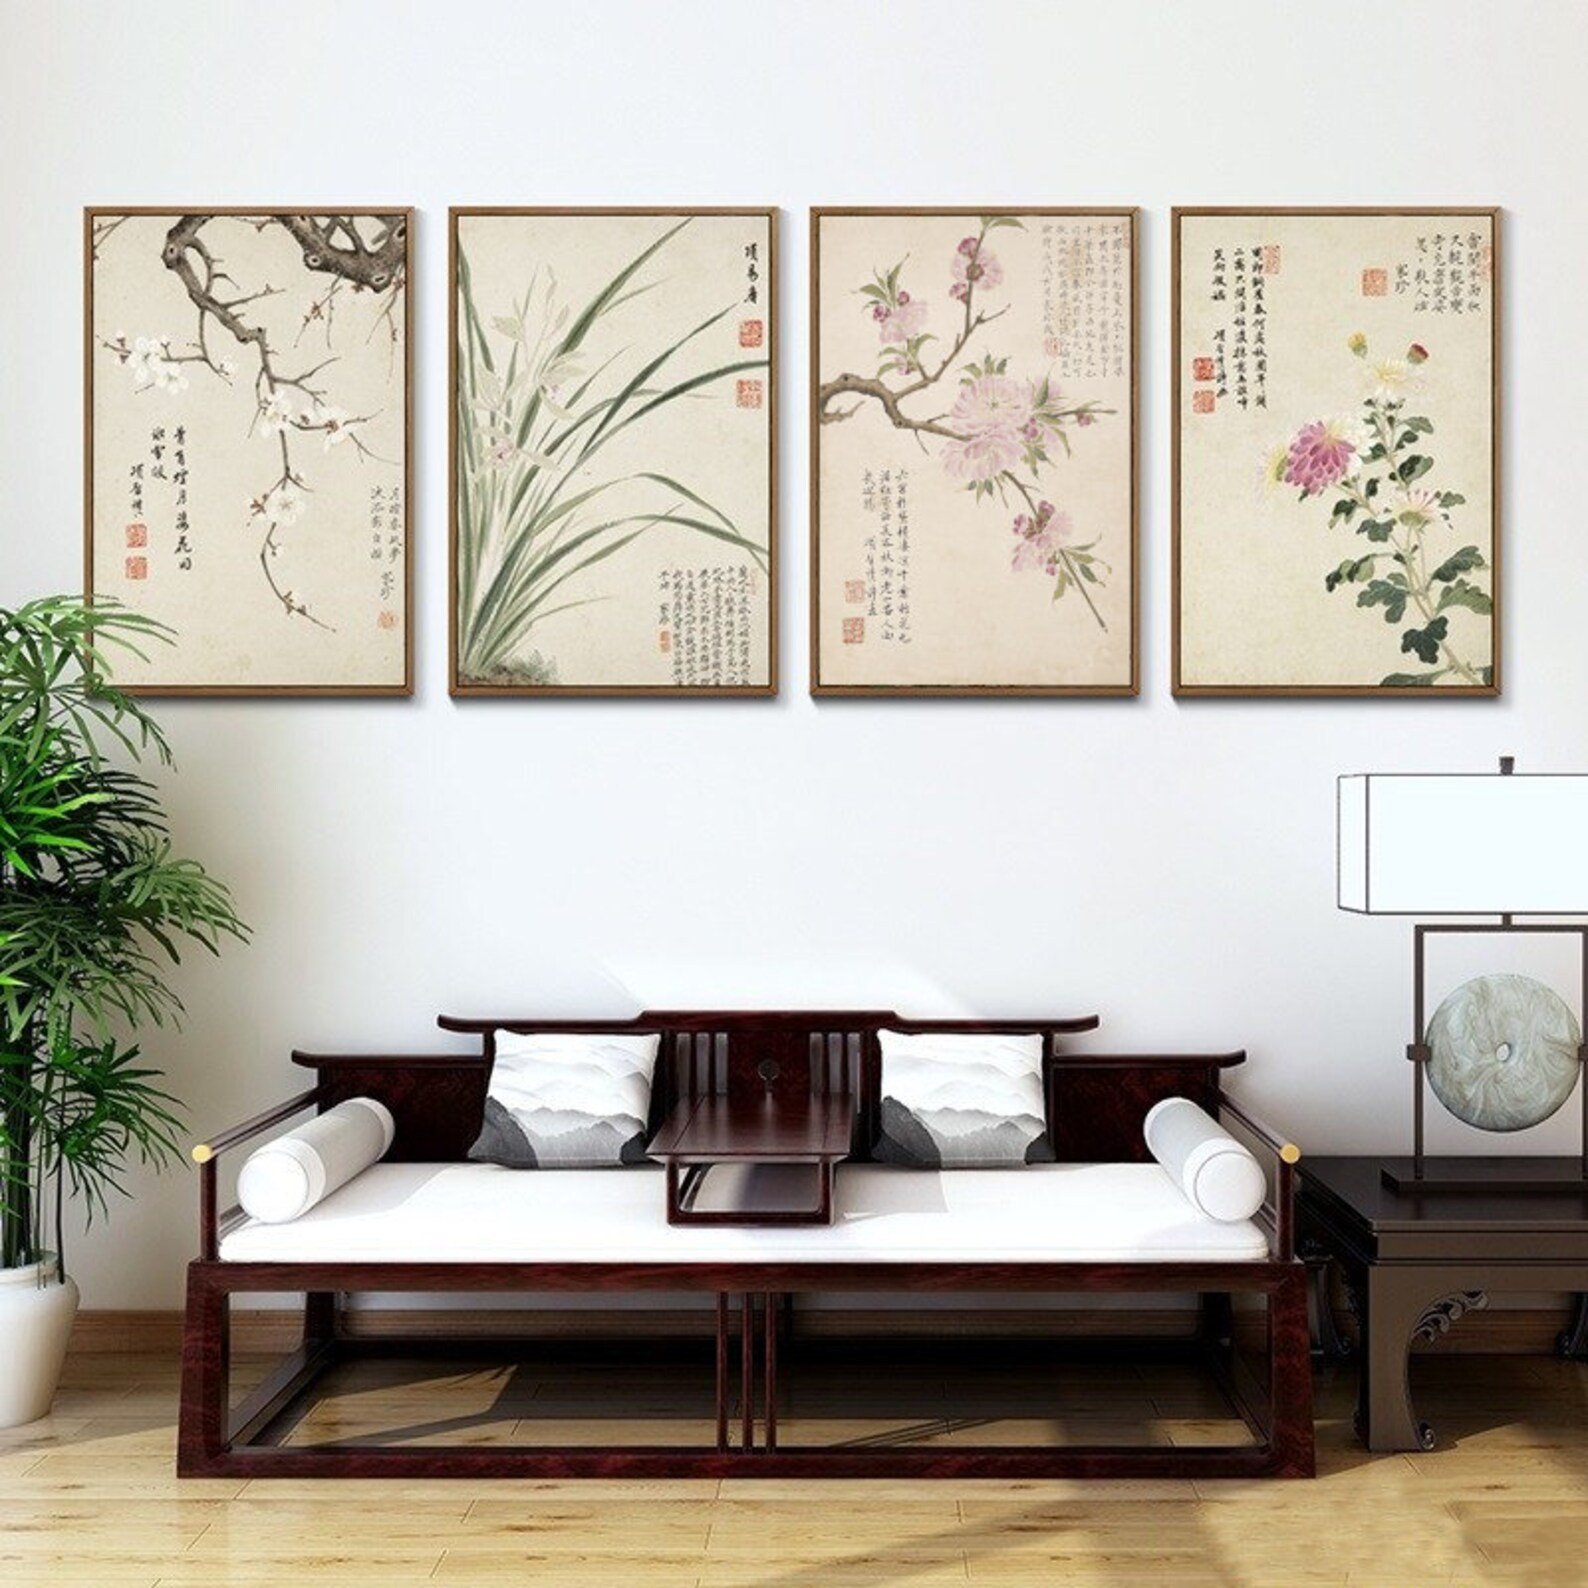 Картины в японском стиле в интерьере